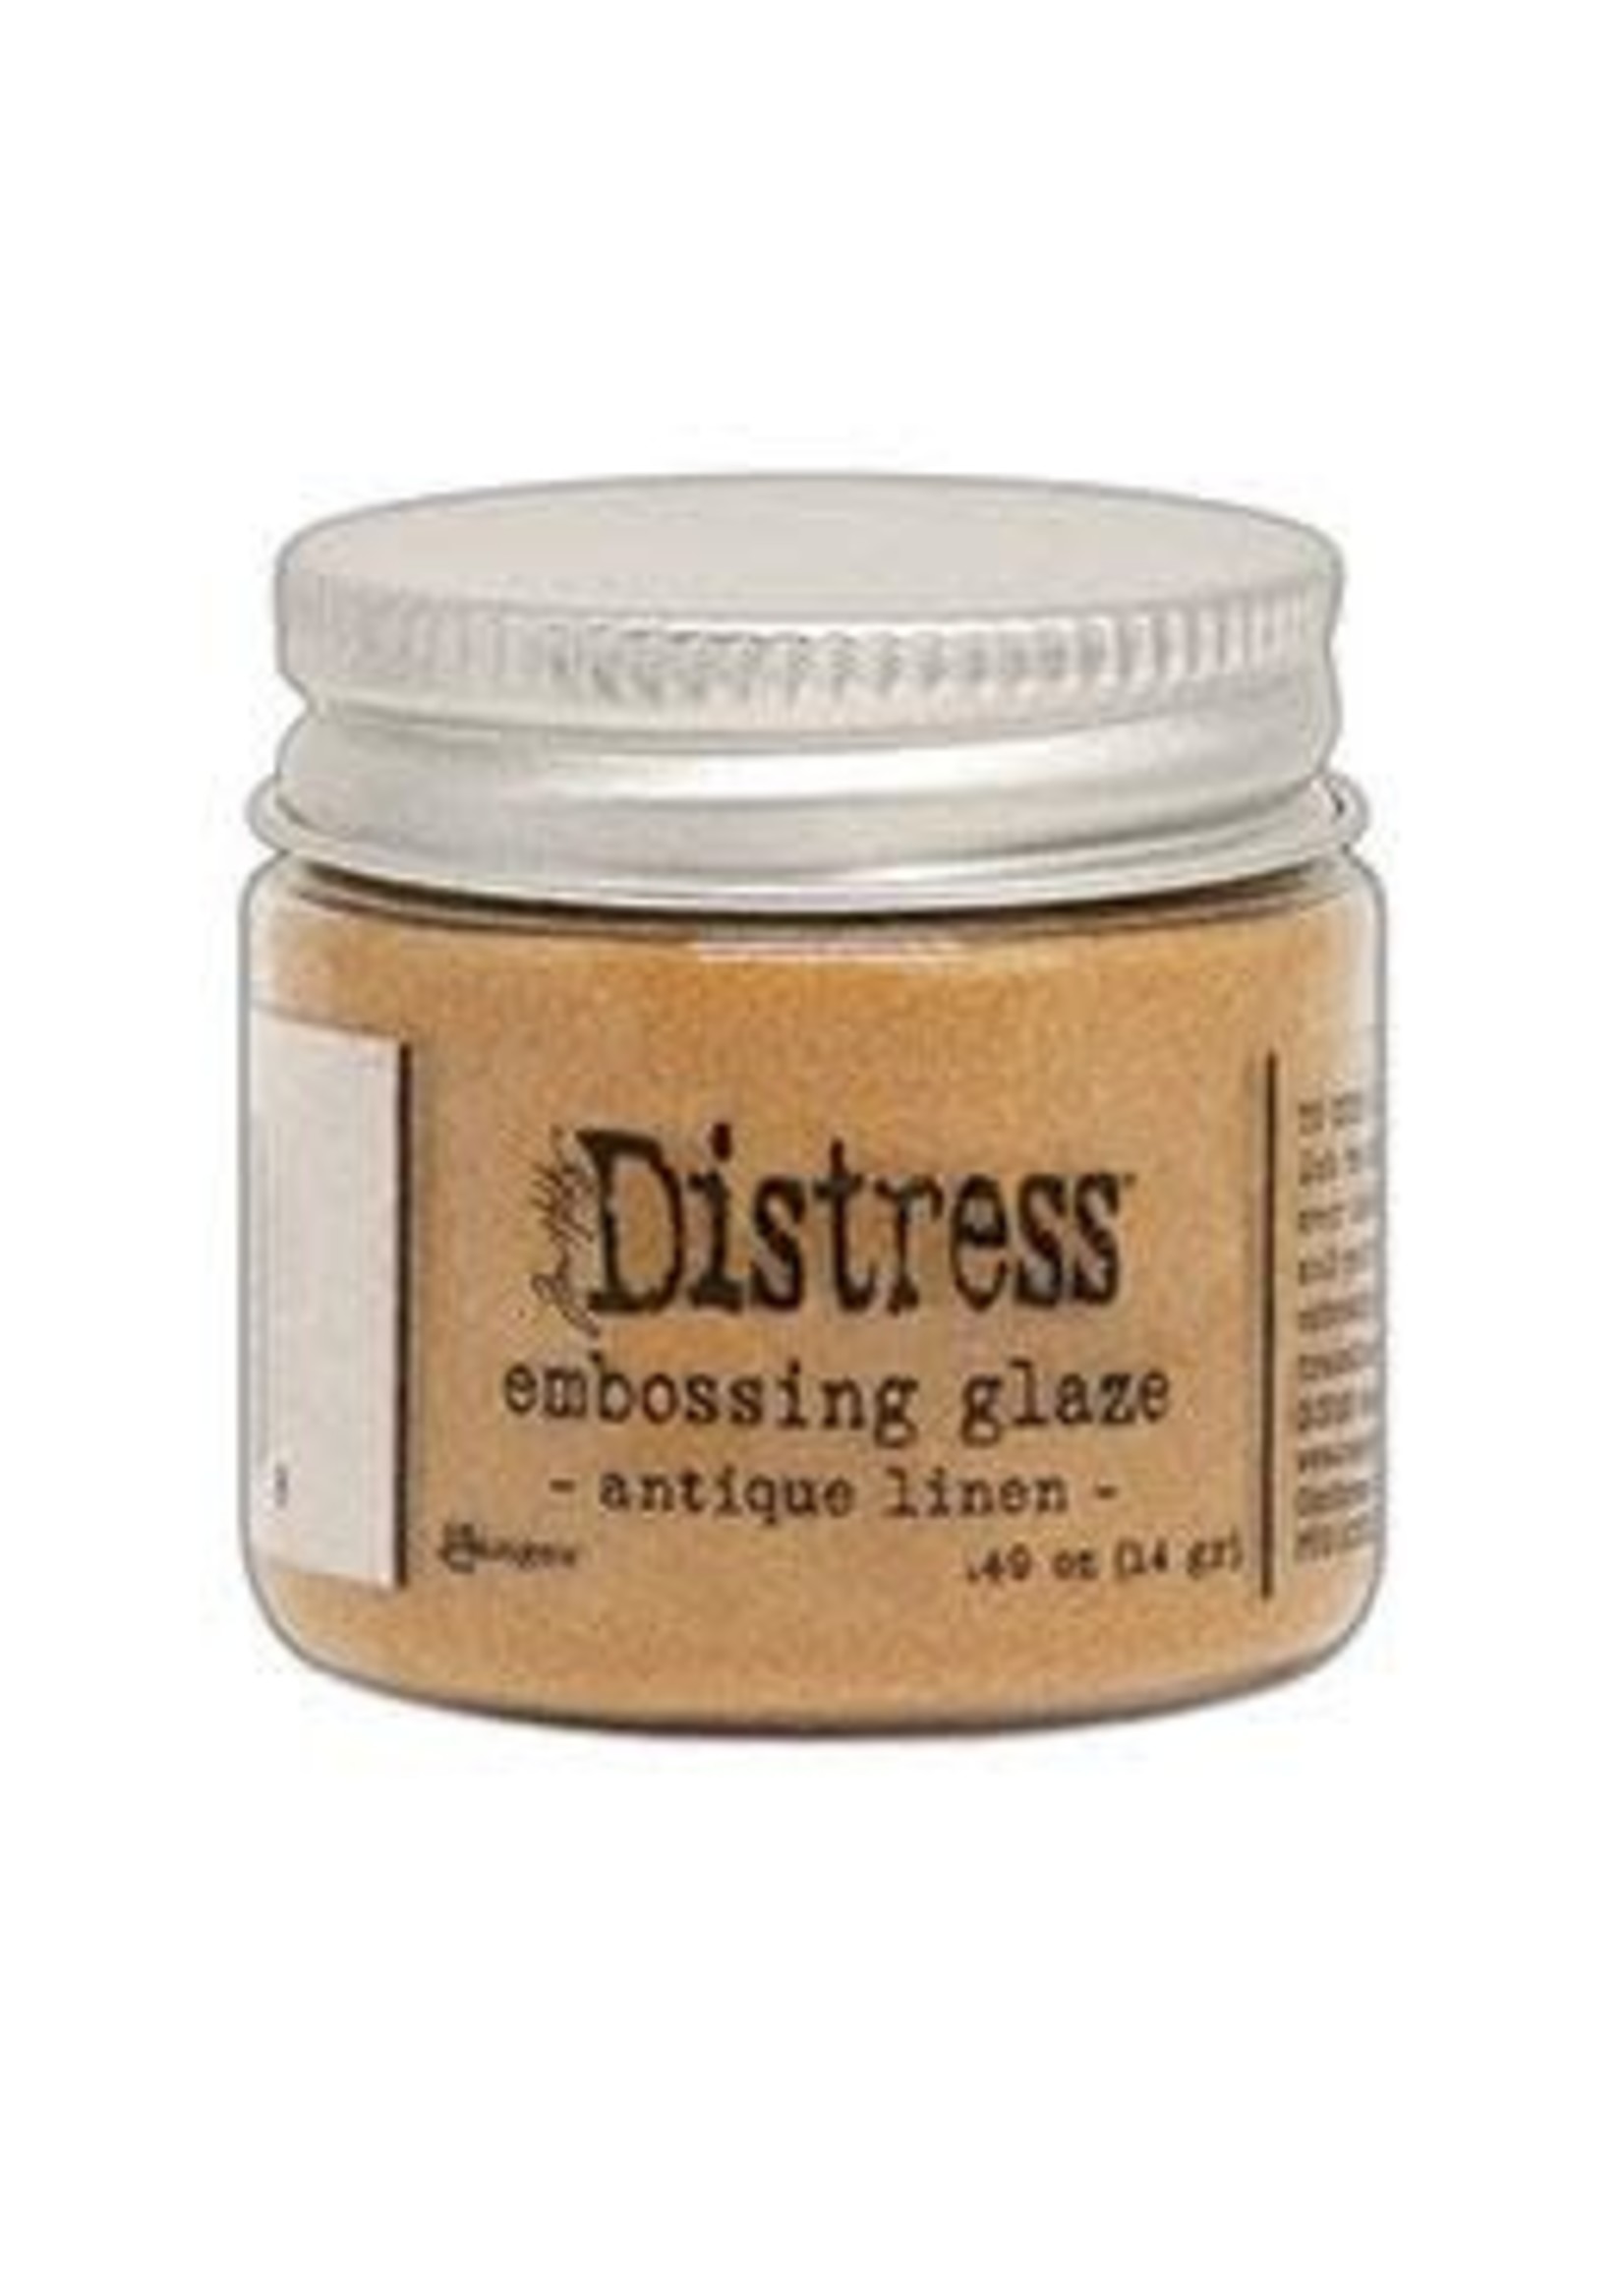 RANGER INDUSTRIES Distress Embossing Glaze Antique Linen